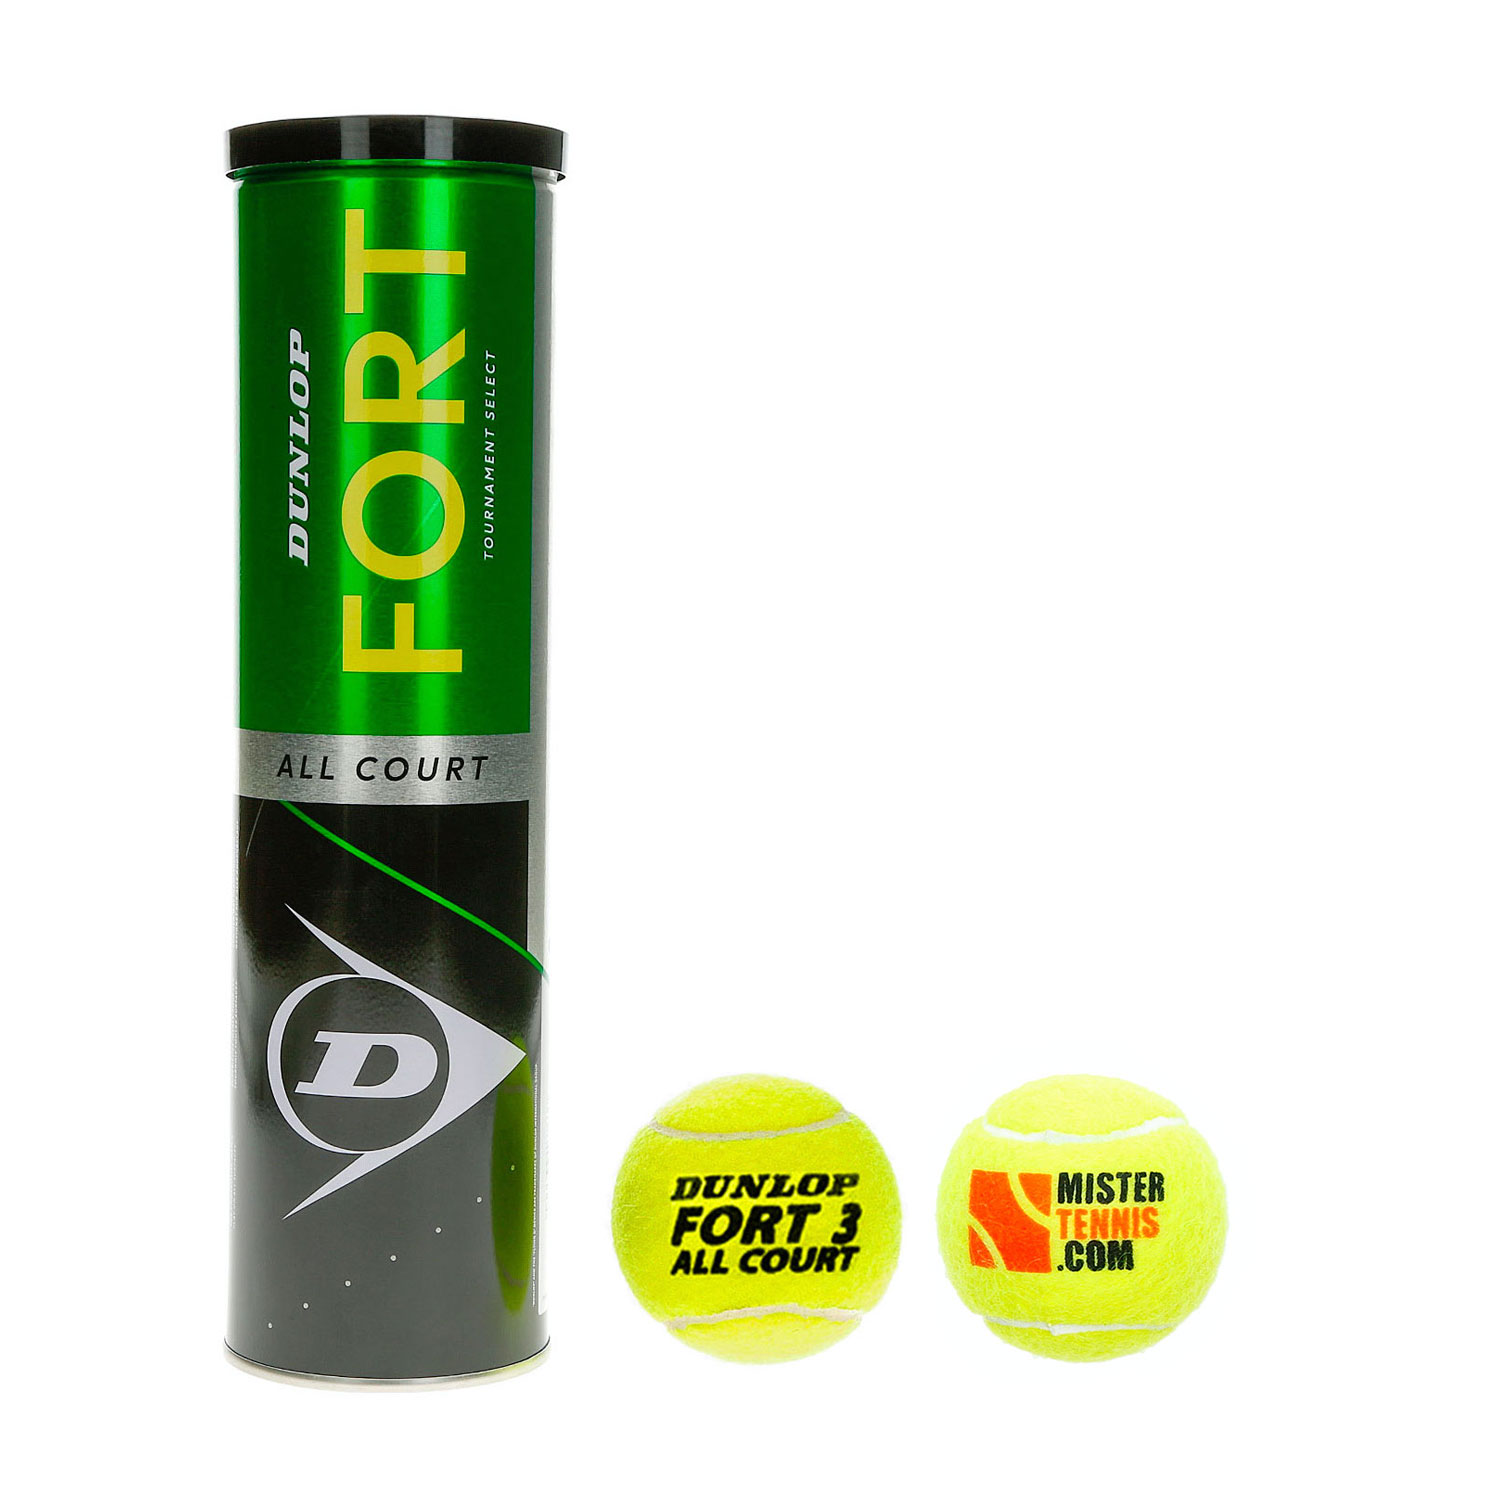 Dunlop Fort All Court Mister Tennis Logo - 4 Ball Can